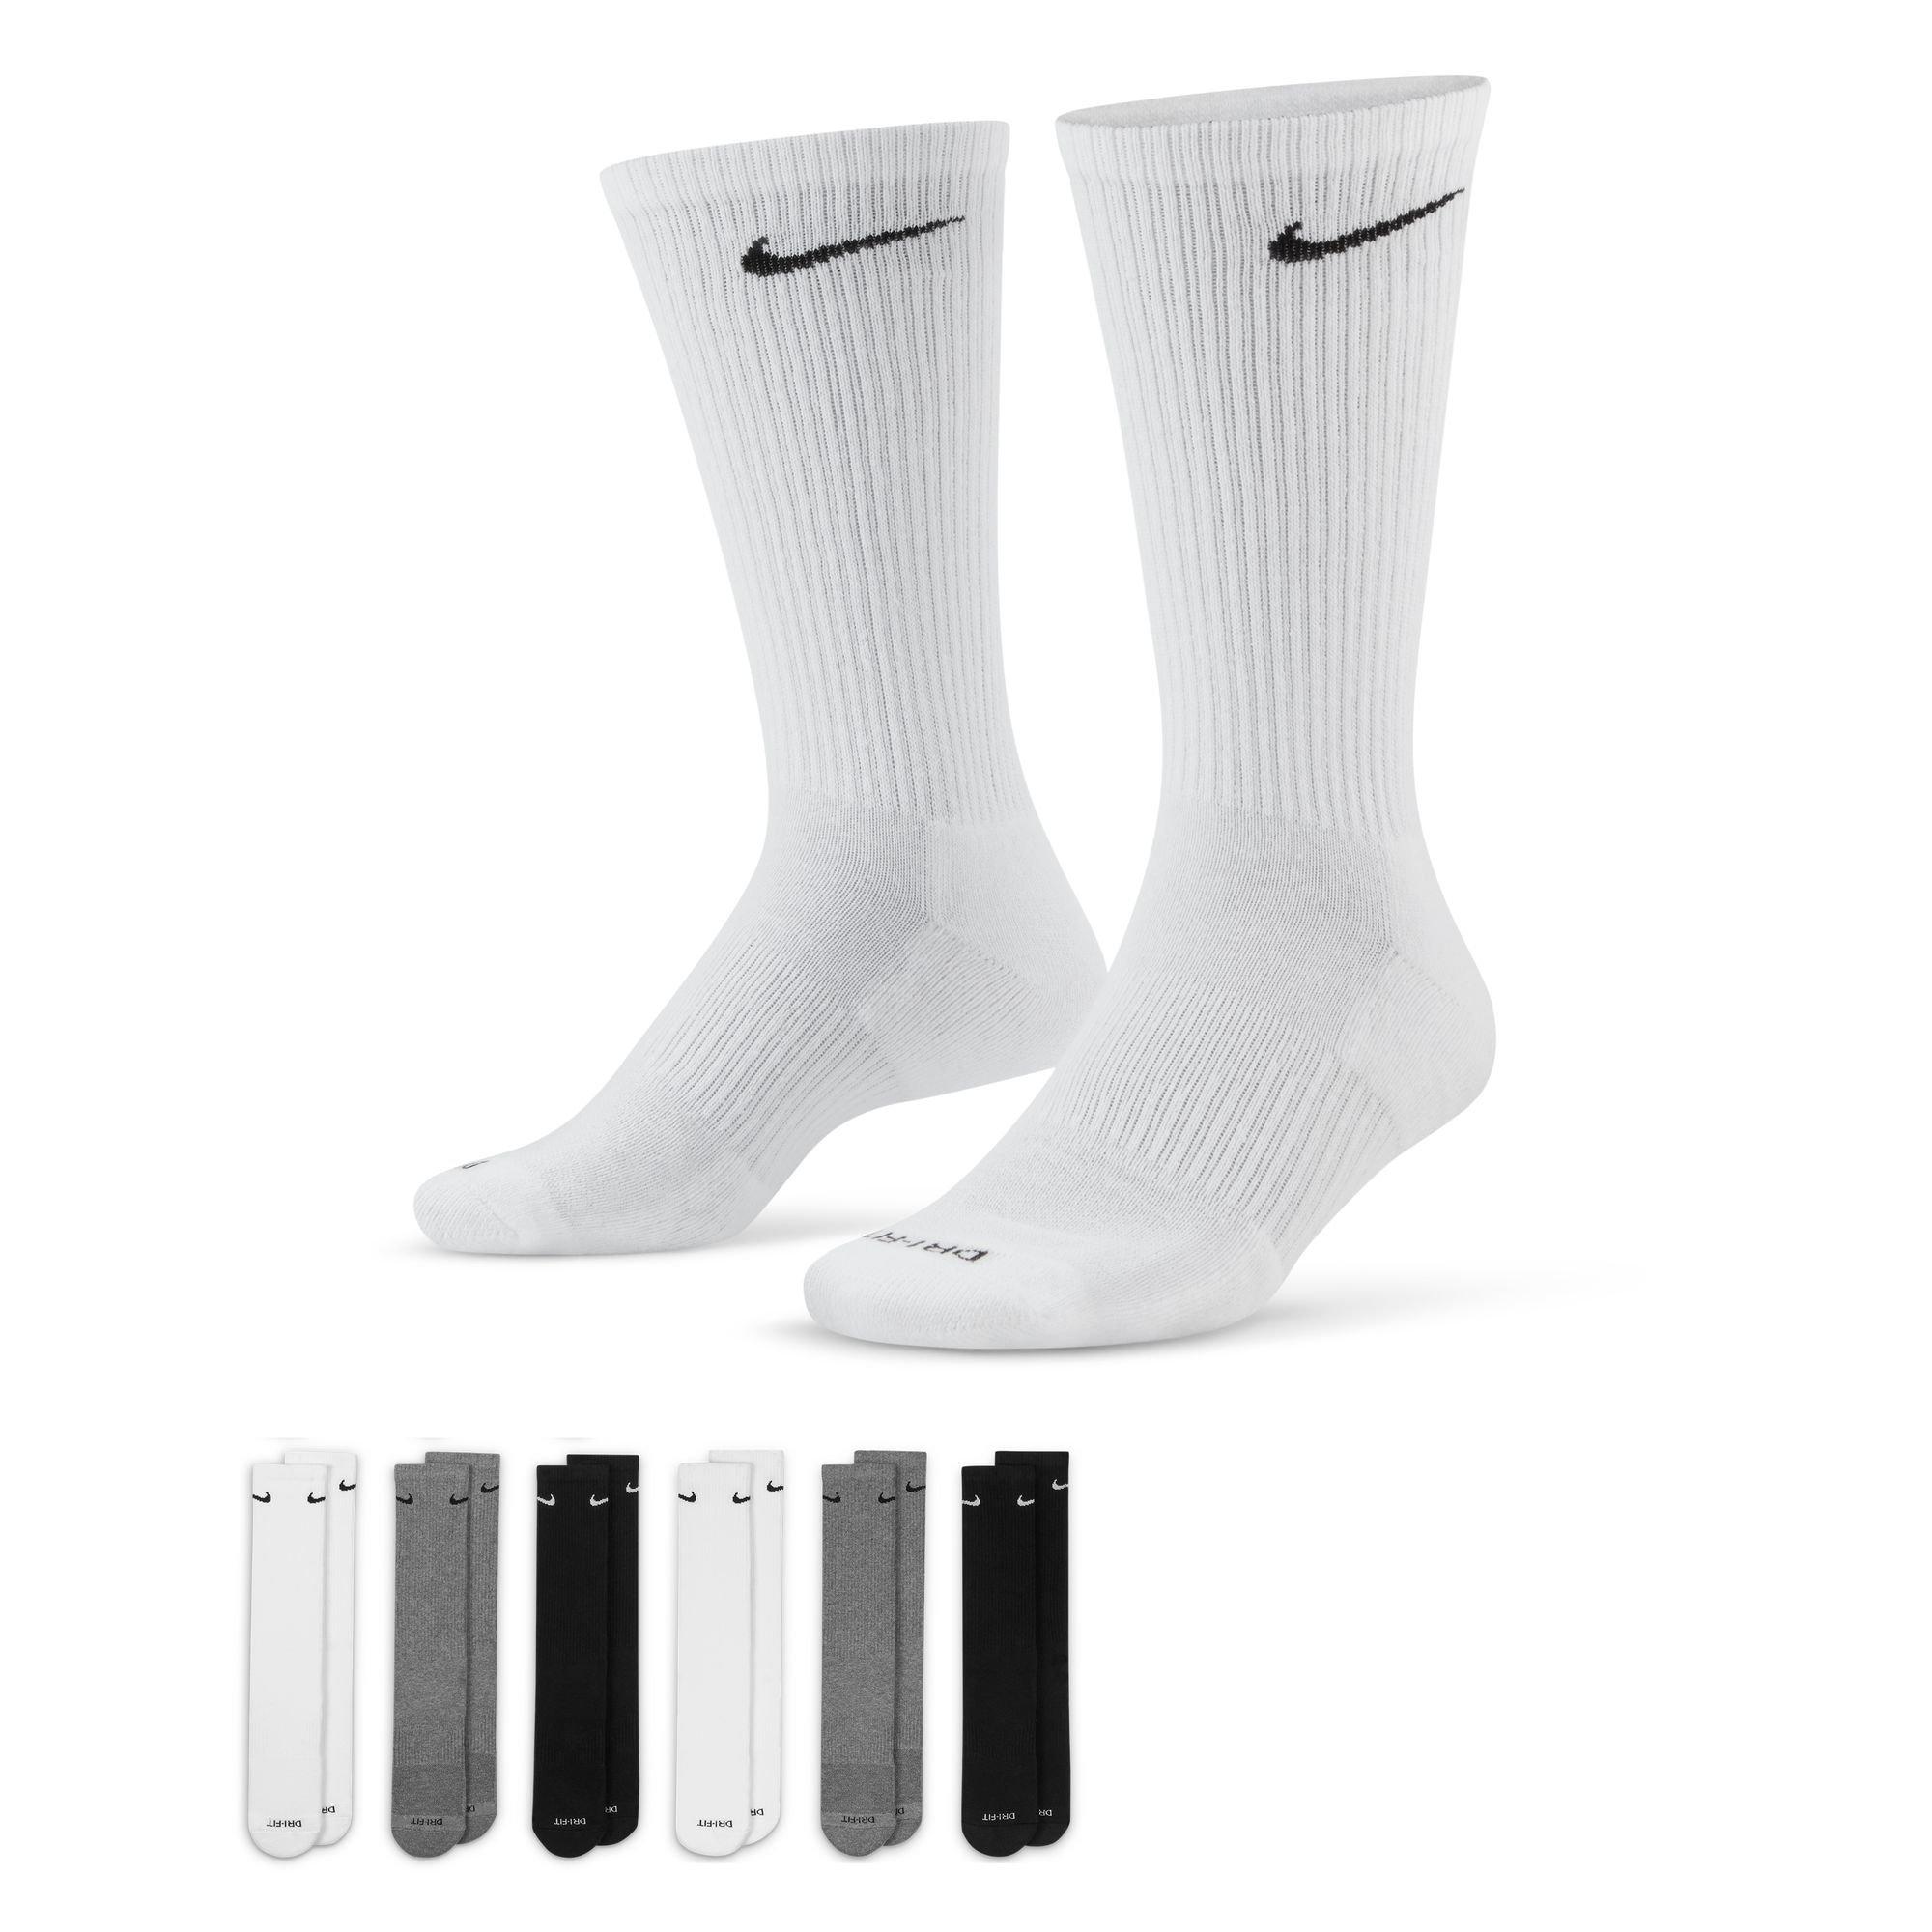 LOT OF 12!! Nike Dri Fit/Nike Grip Socks 3 Small, 5 Medium, 2